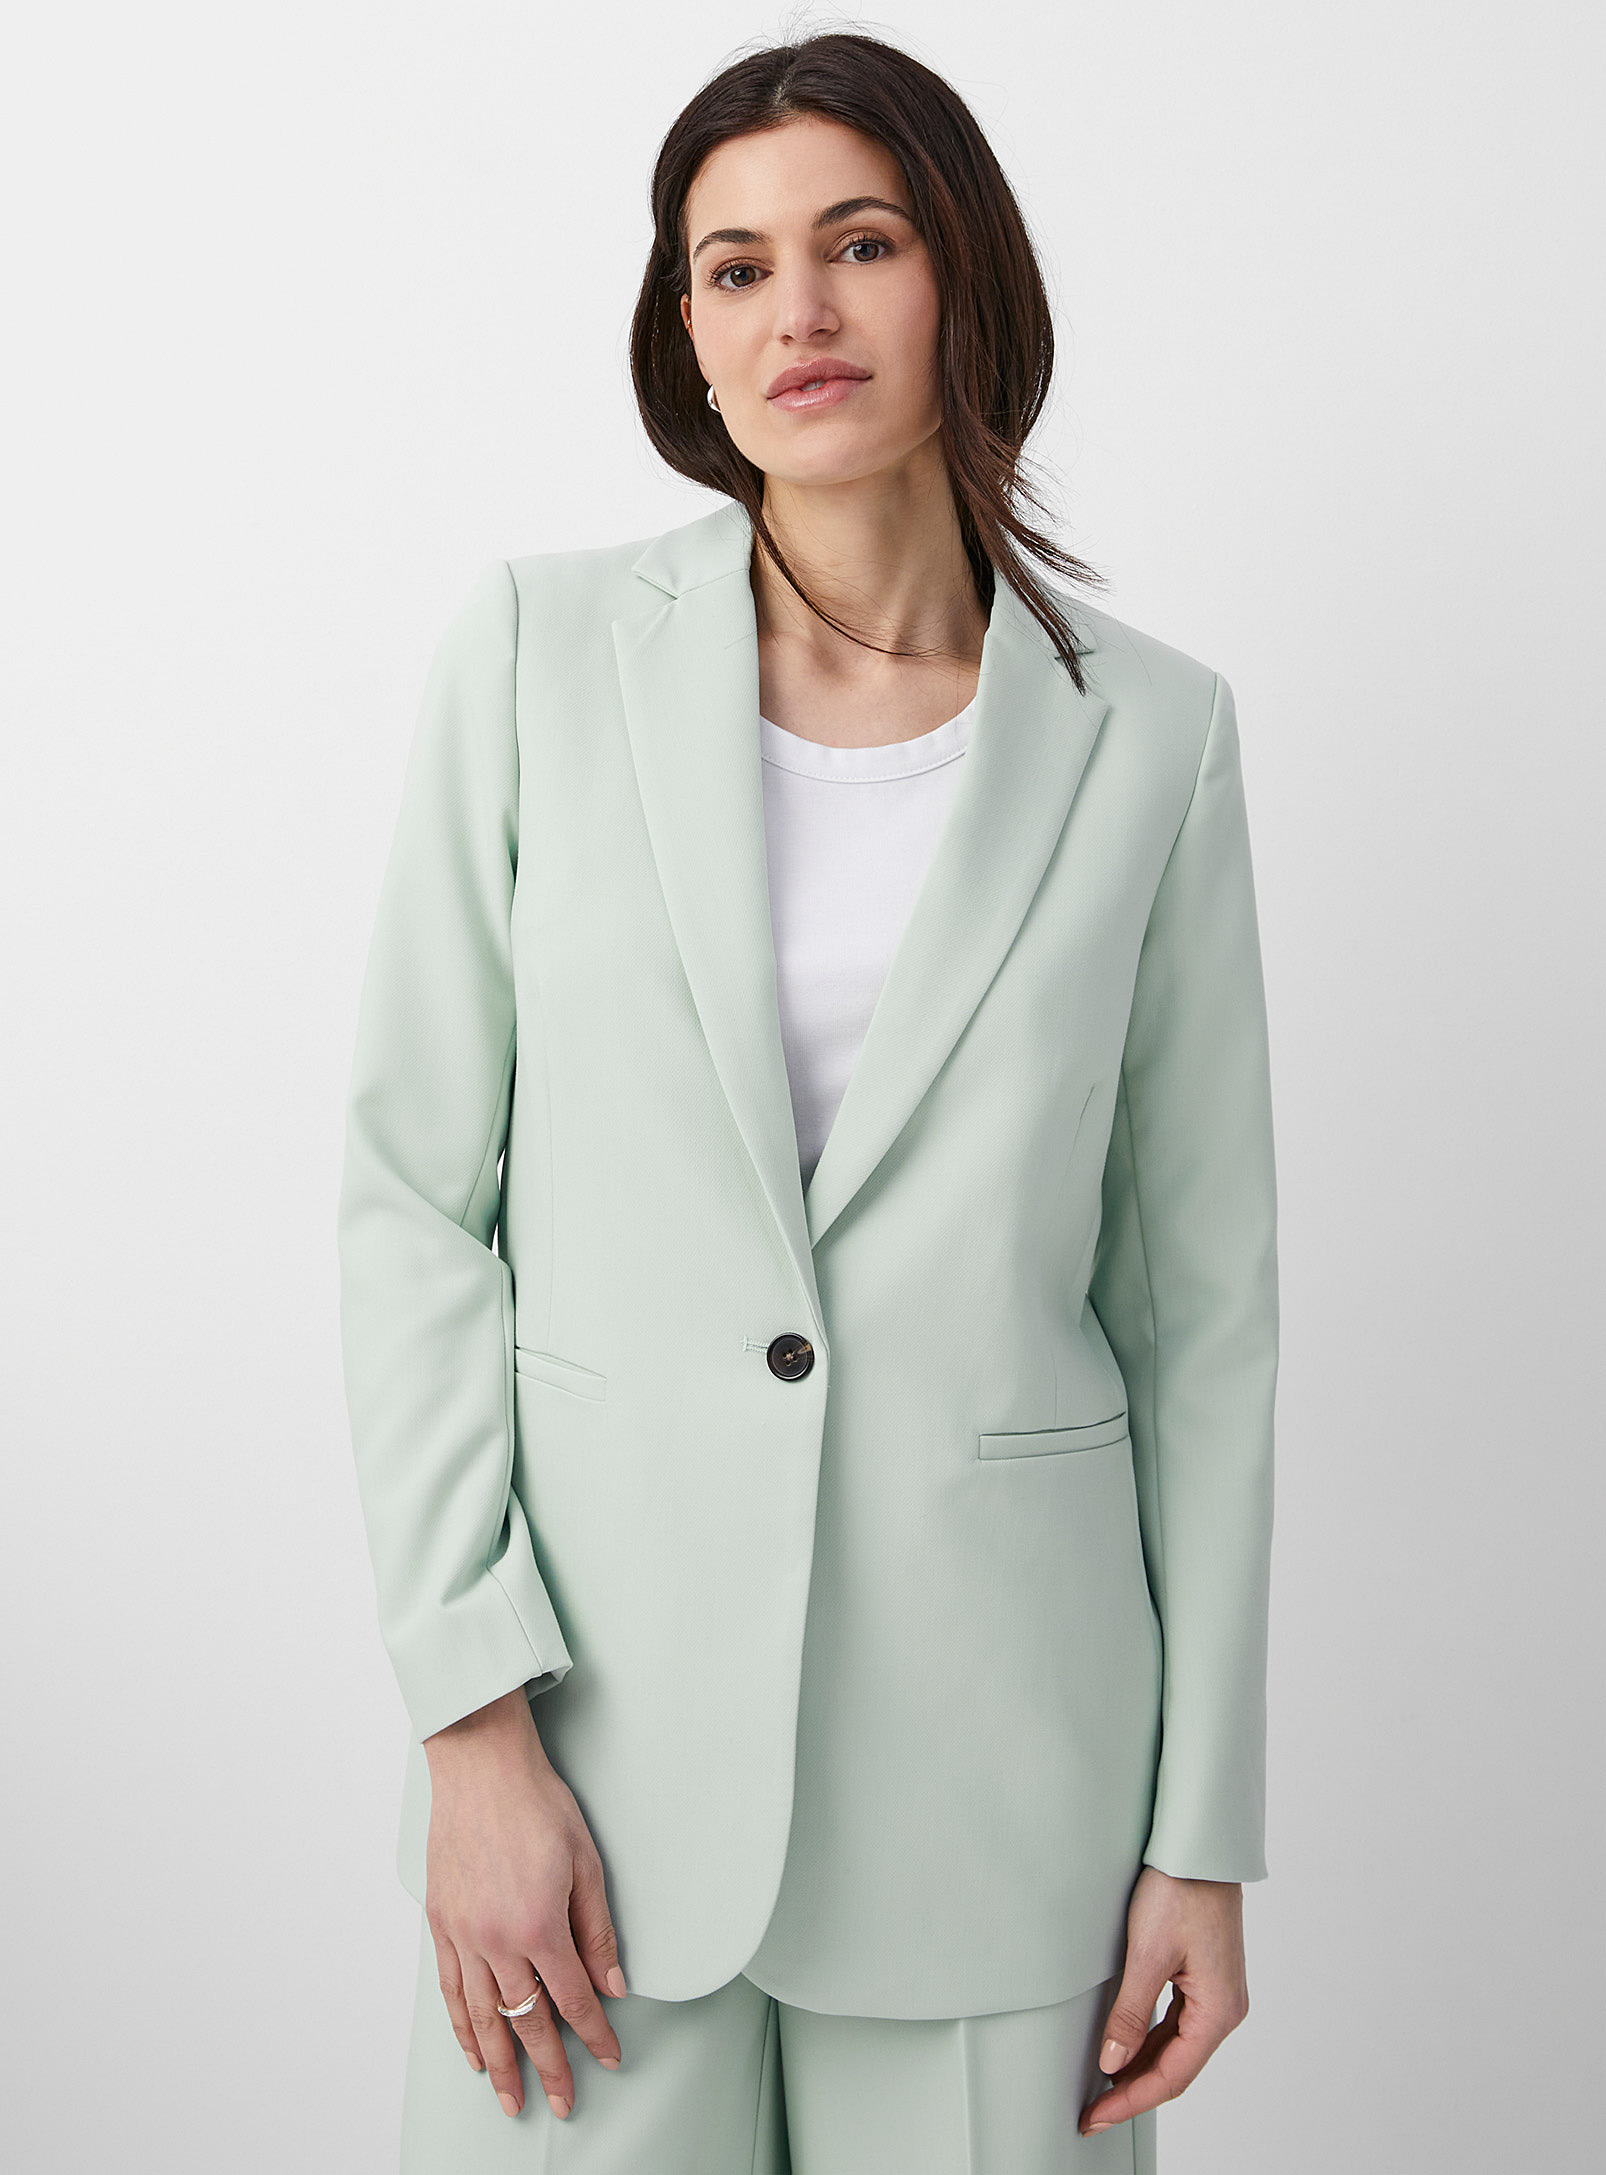 Soaked Luxury - Women's Corinne soft mint long Blazer Jacket